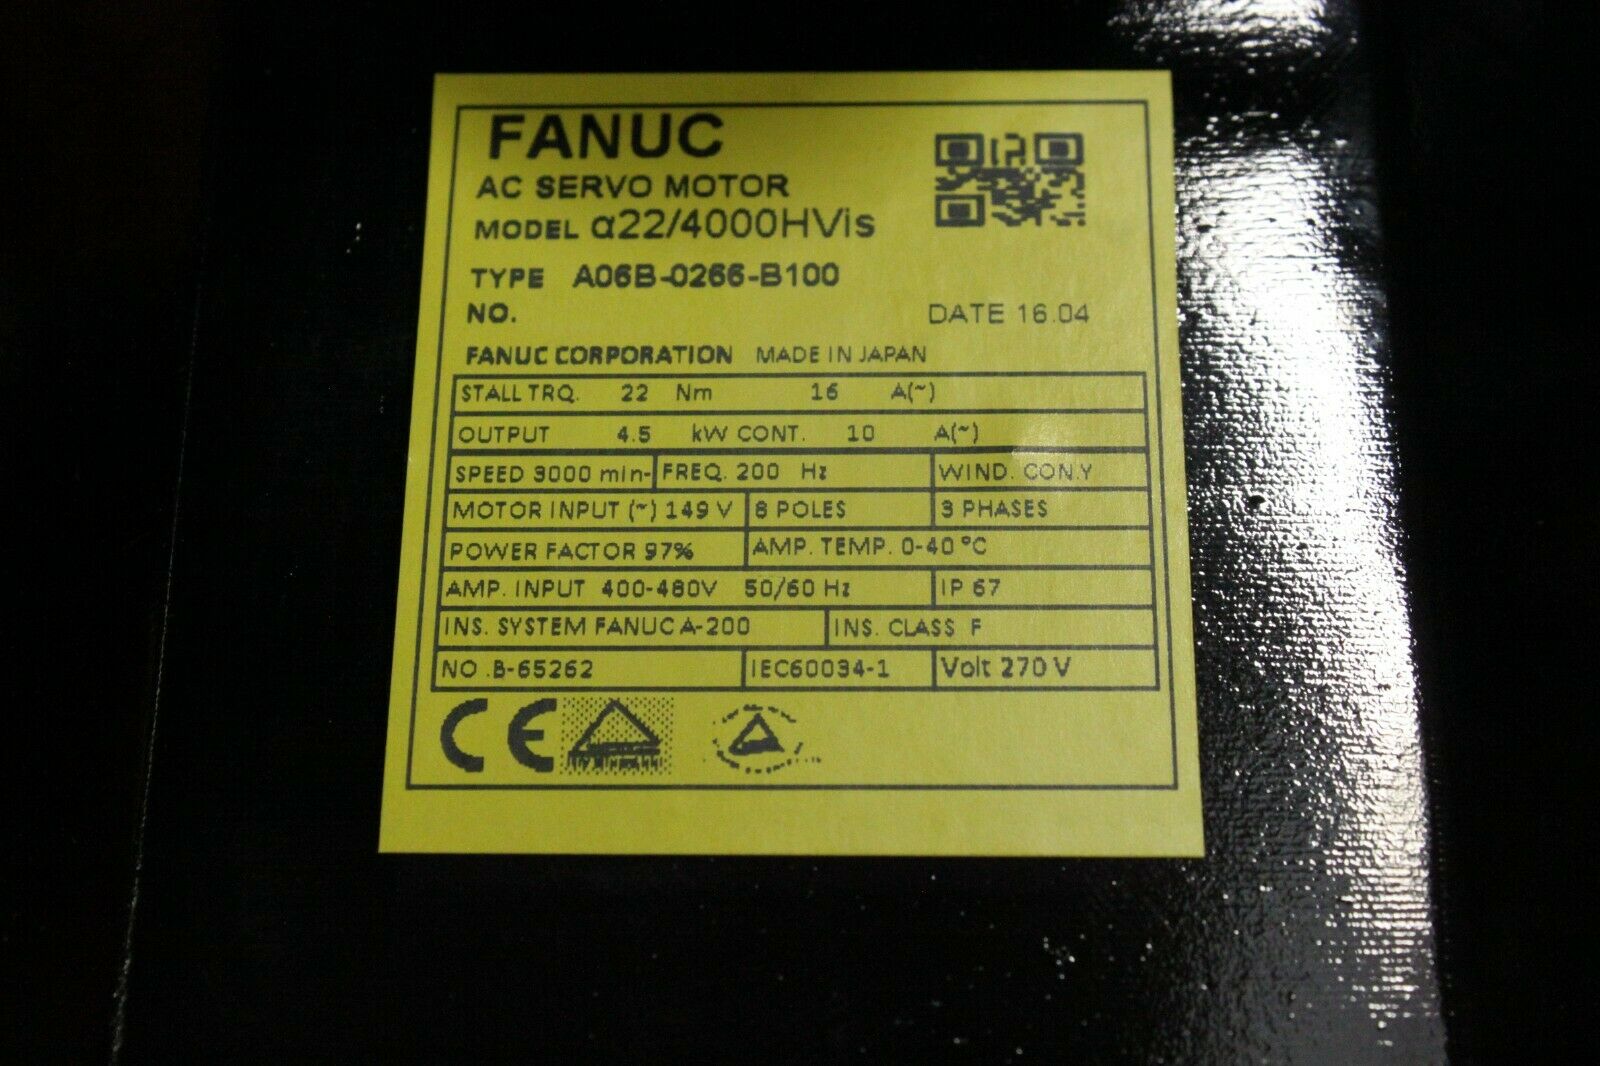 A06B-0123-B075 Fanuc AC Servo Motor A3/3000 A64 Pulse, 127V, 200Hz, 3PH,  4.6A